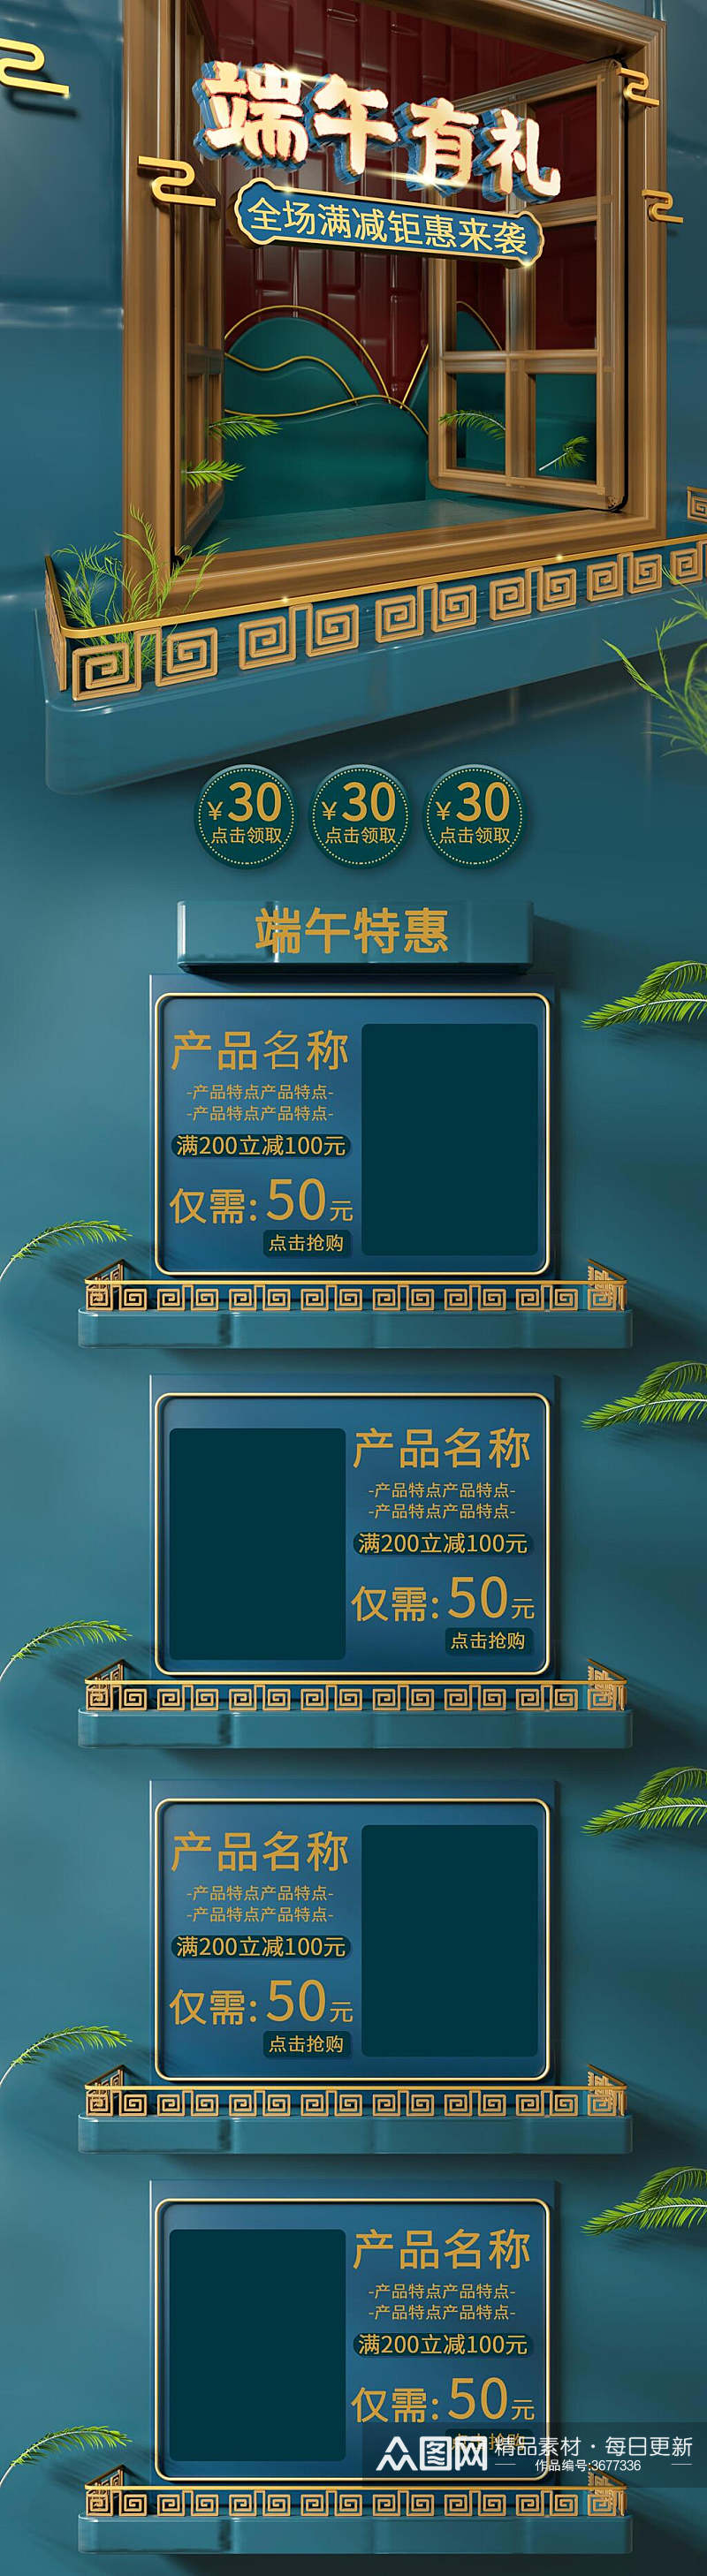 中国风端午有礼端午节促销电商首页素材